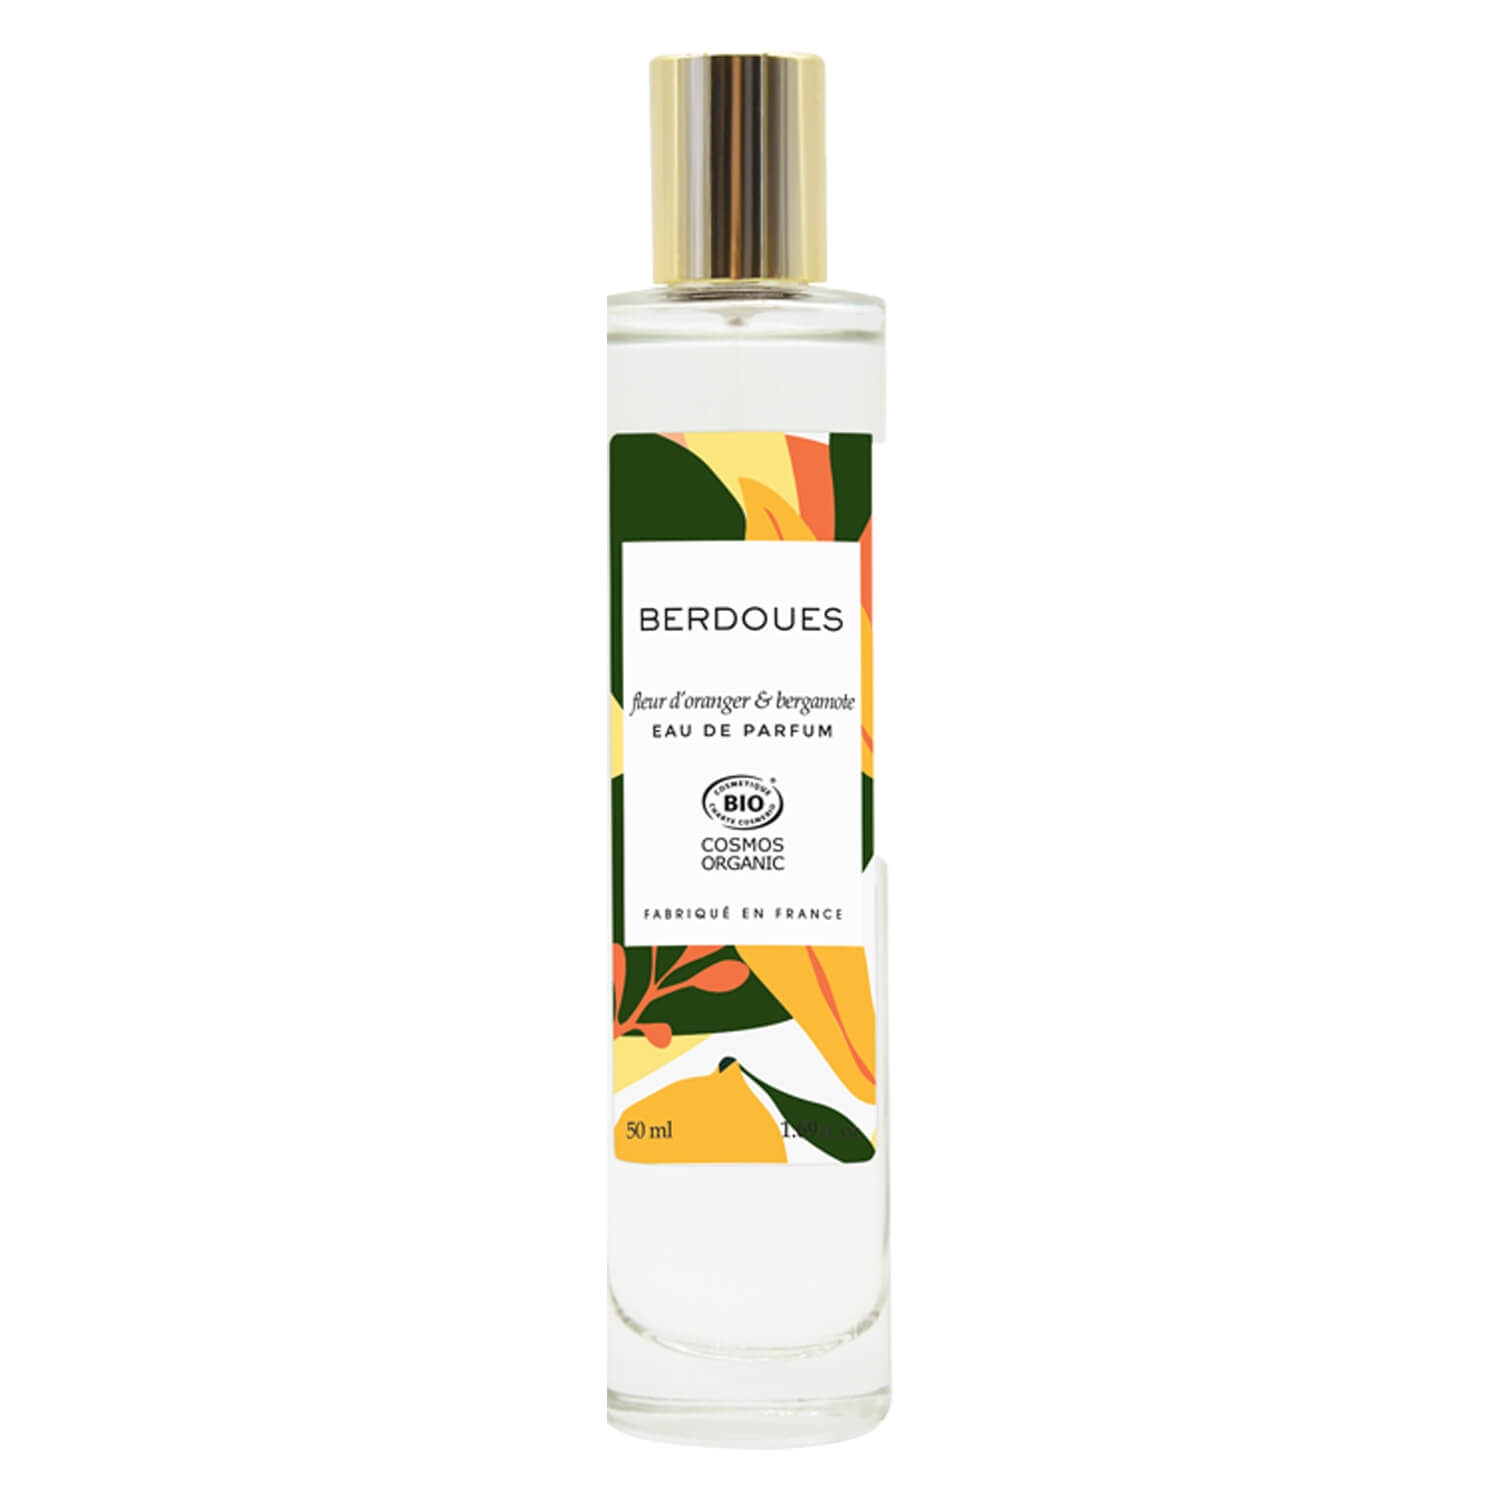 Produktbild von BERDOUES - fleur d'oranger & bergamote Eau de Parfum